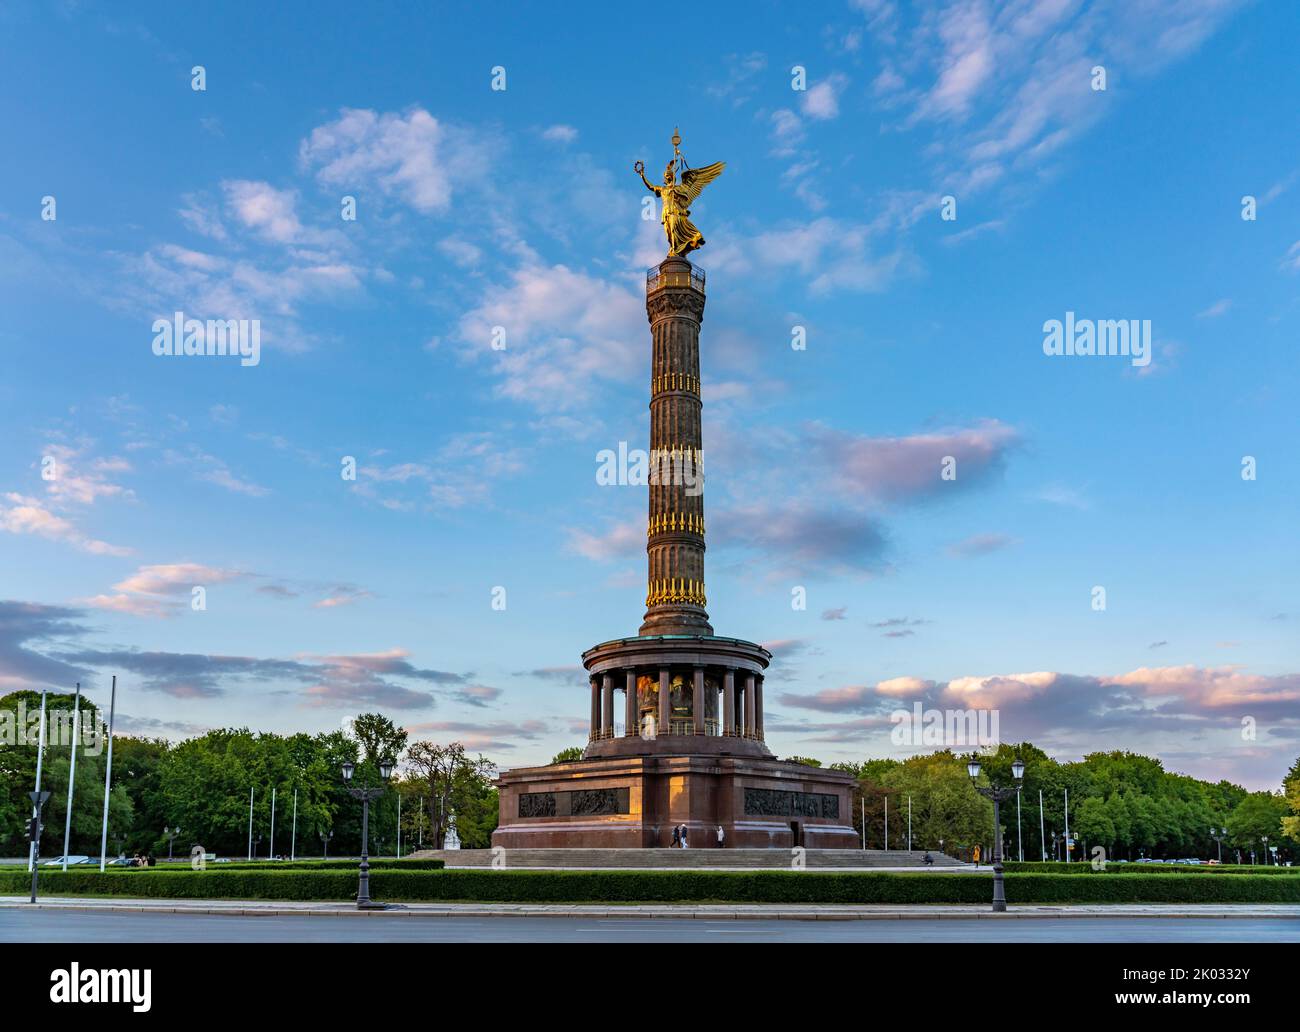 La colonna della Vittoria sulla Grande Stella nel Grande Tiergarten è una delle più importanti attrazioni di Berlino e un importante monumento nazionale della Germania. Foto Stock